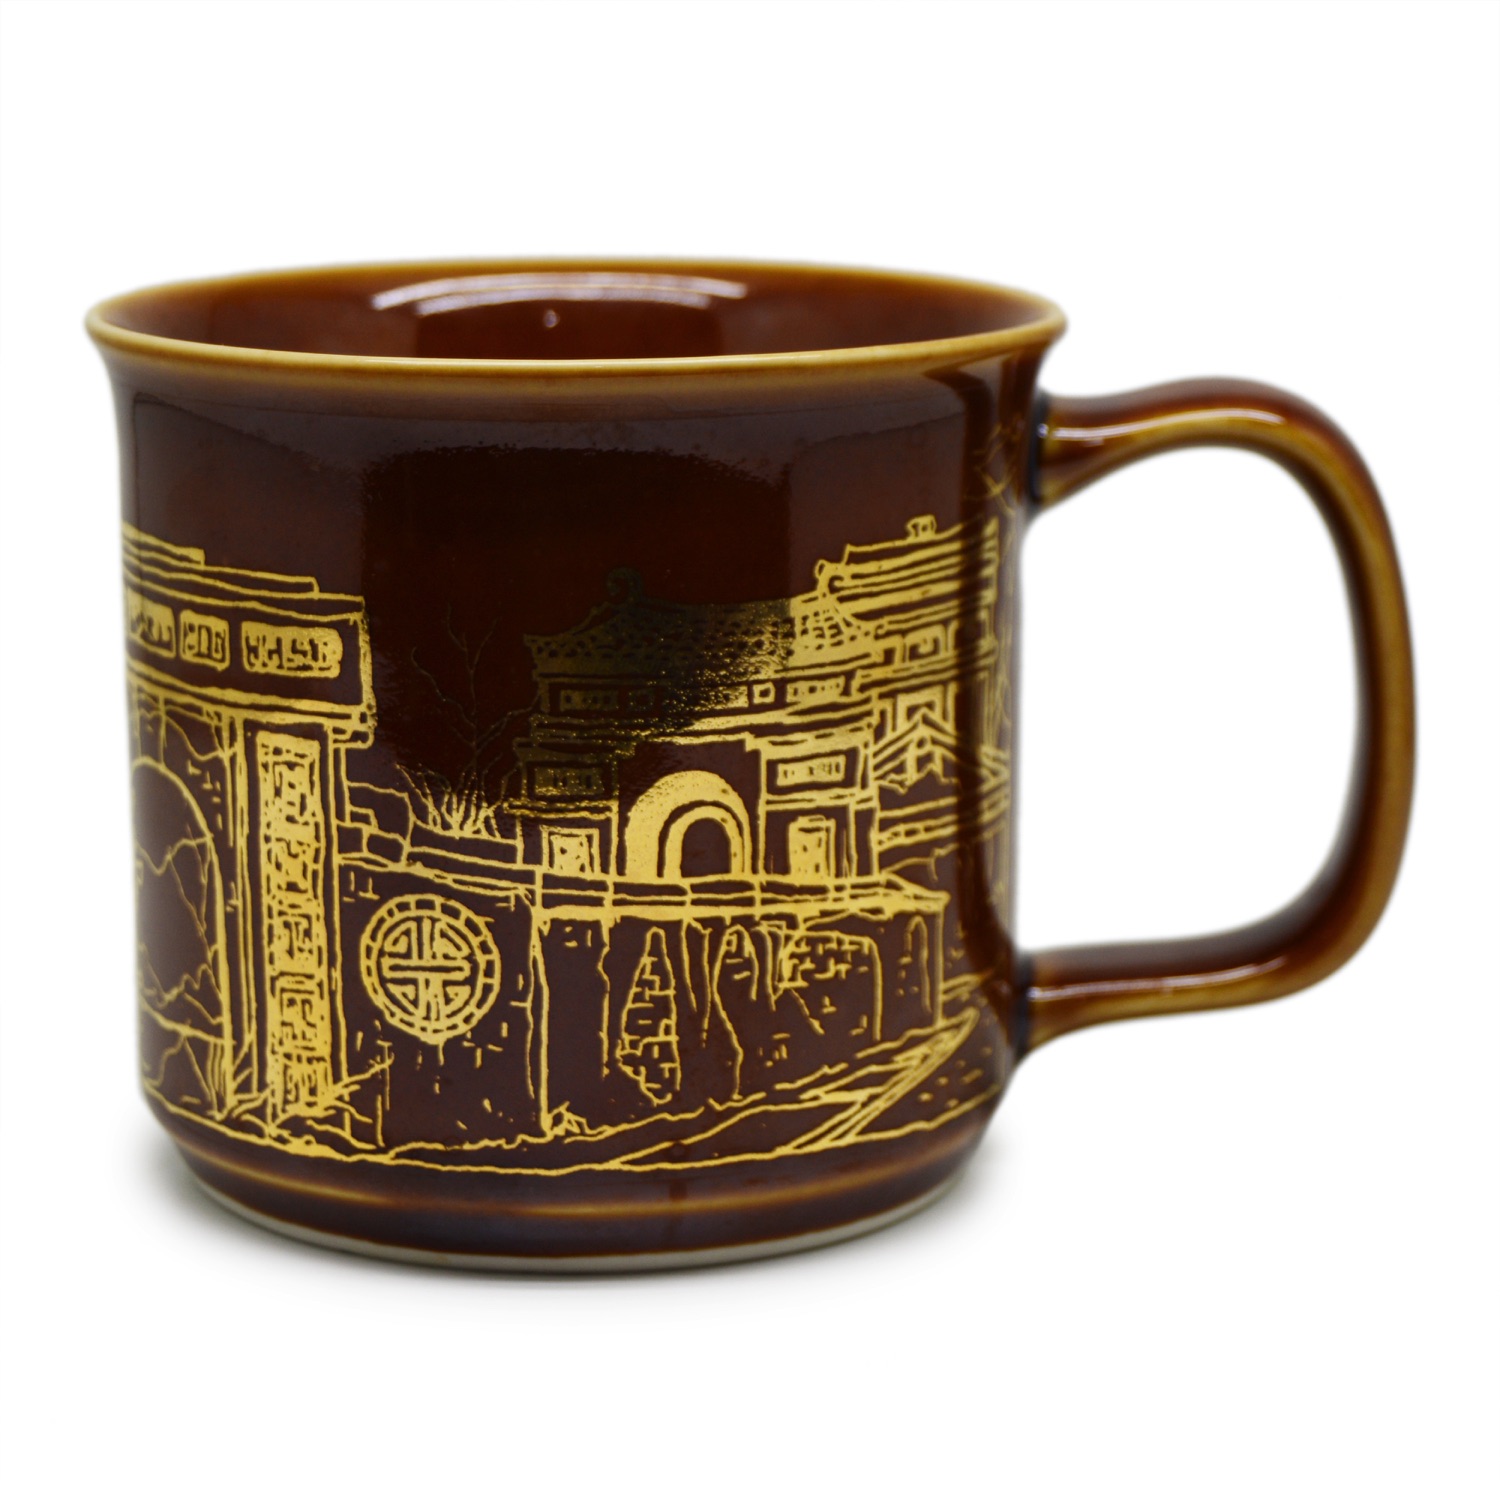 Grande Coffee Mug - Huế